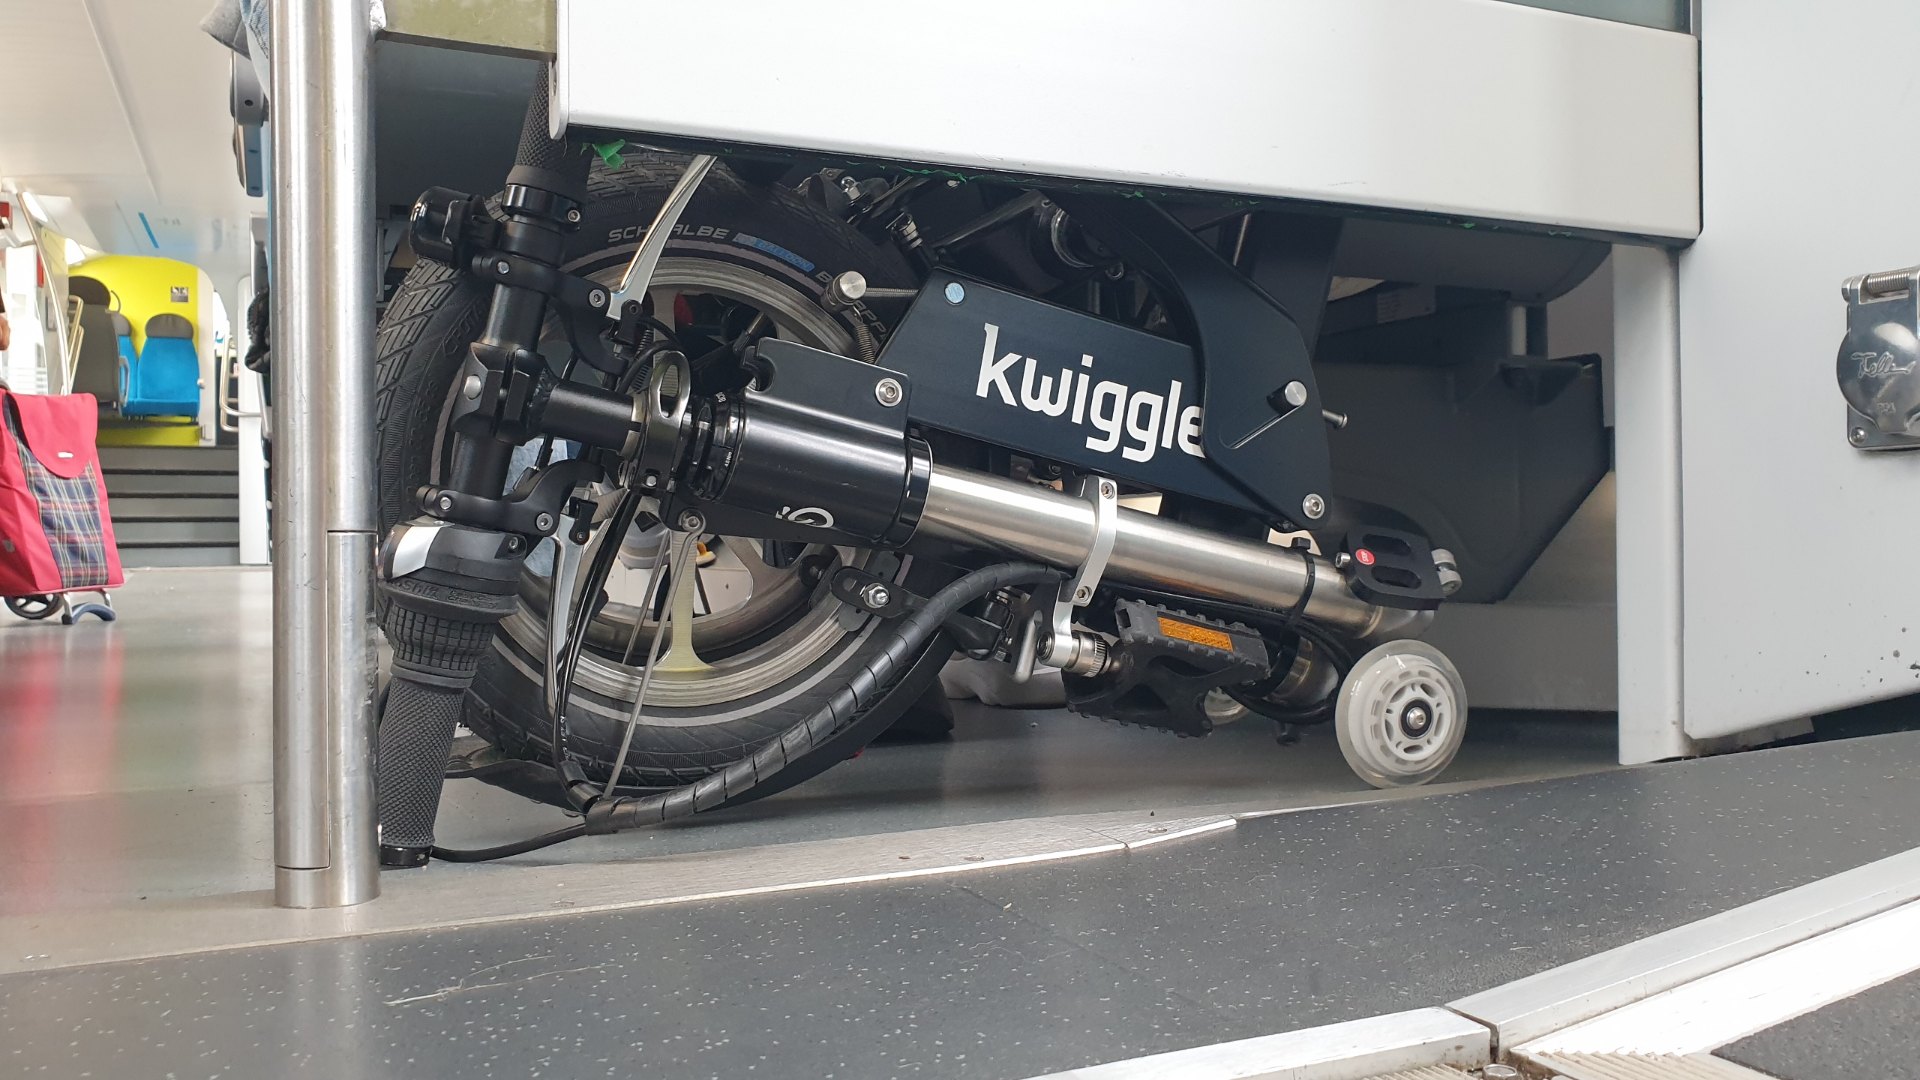 Folding-bike-Kwiggle-behind-the-seat-in-the-train